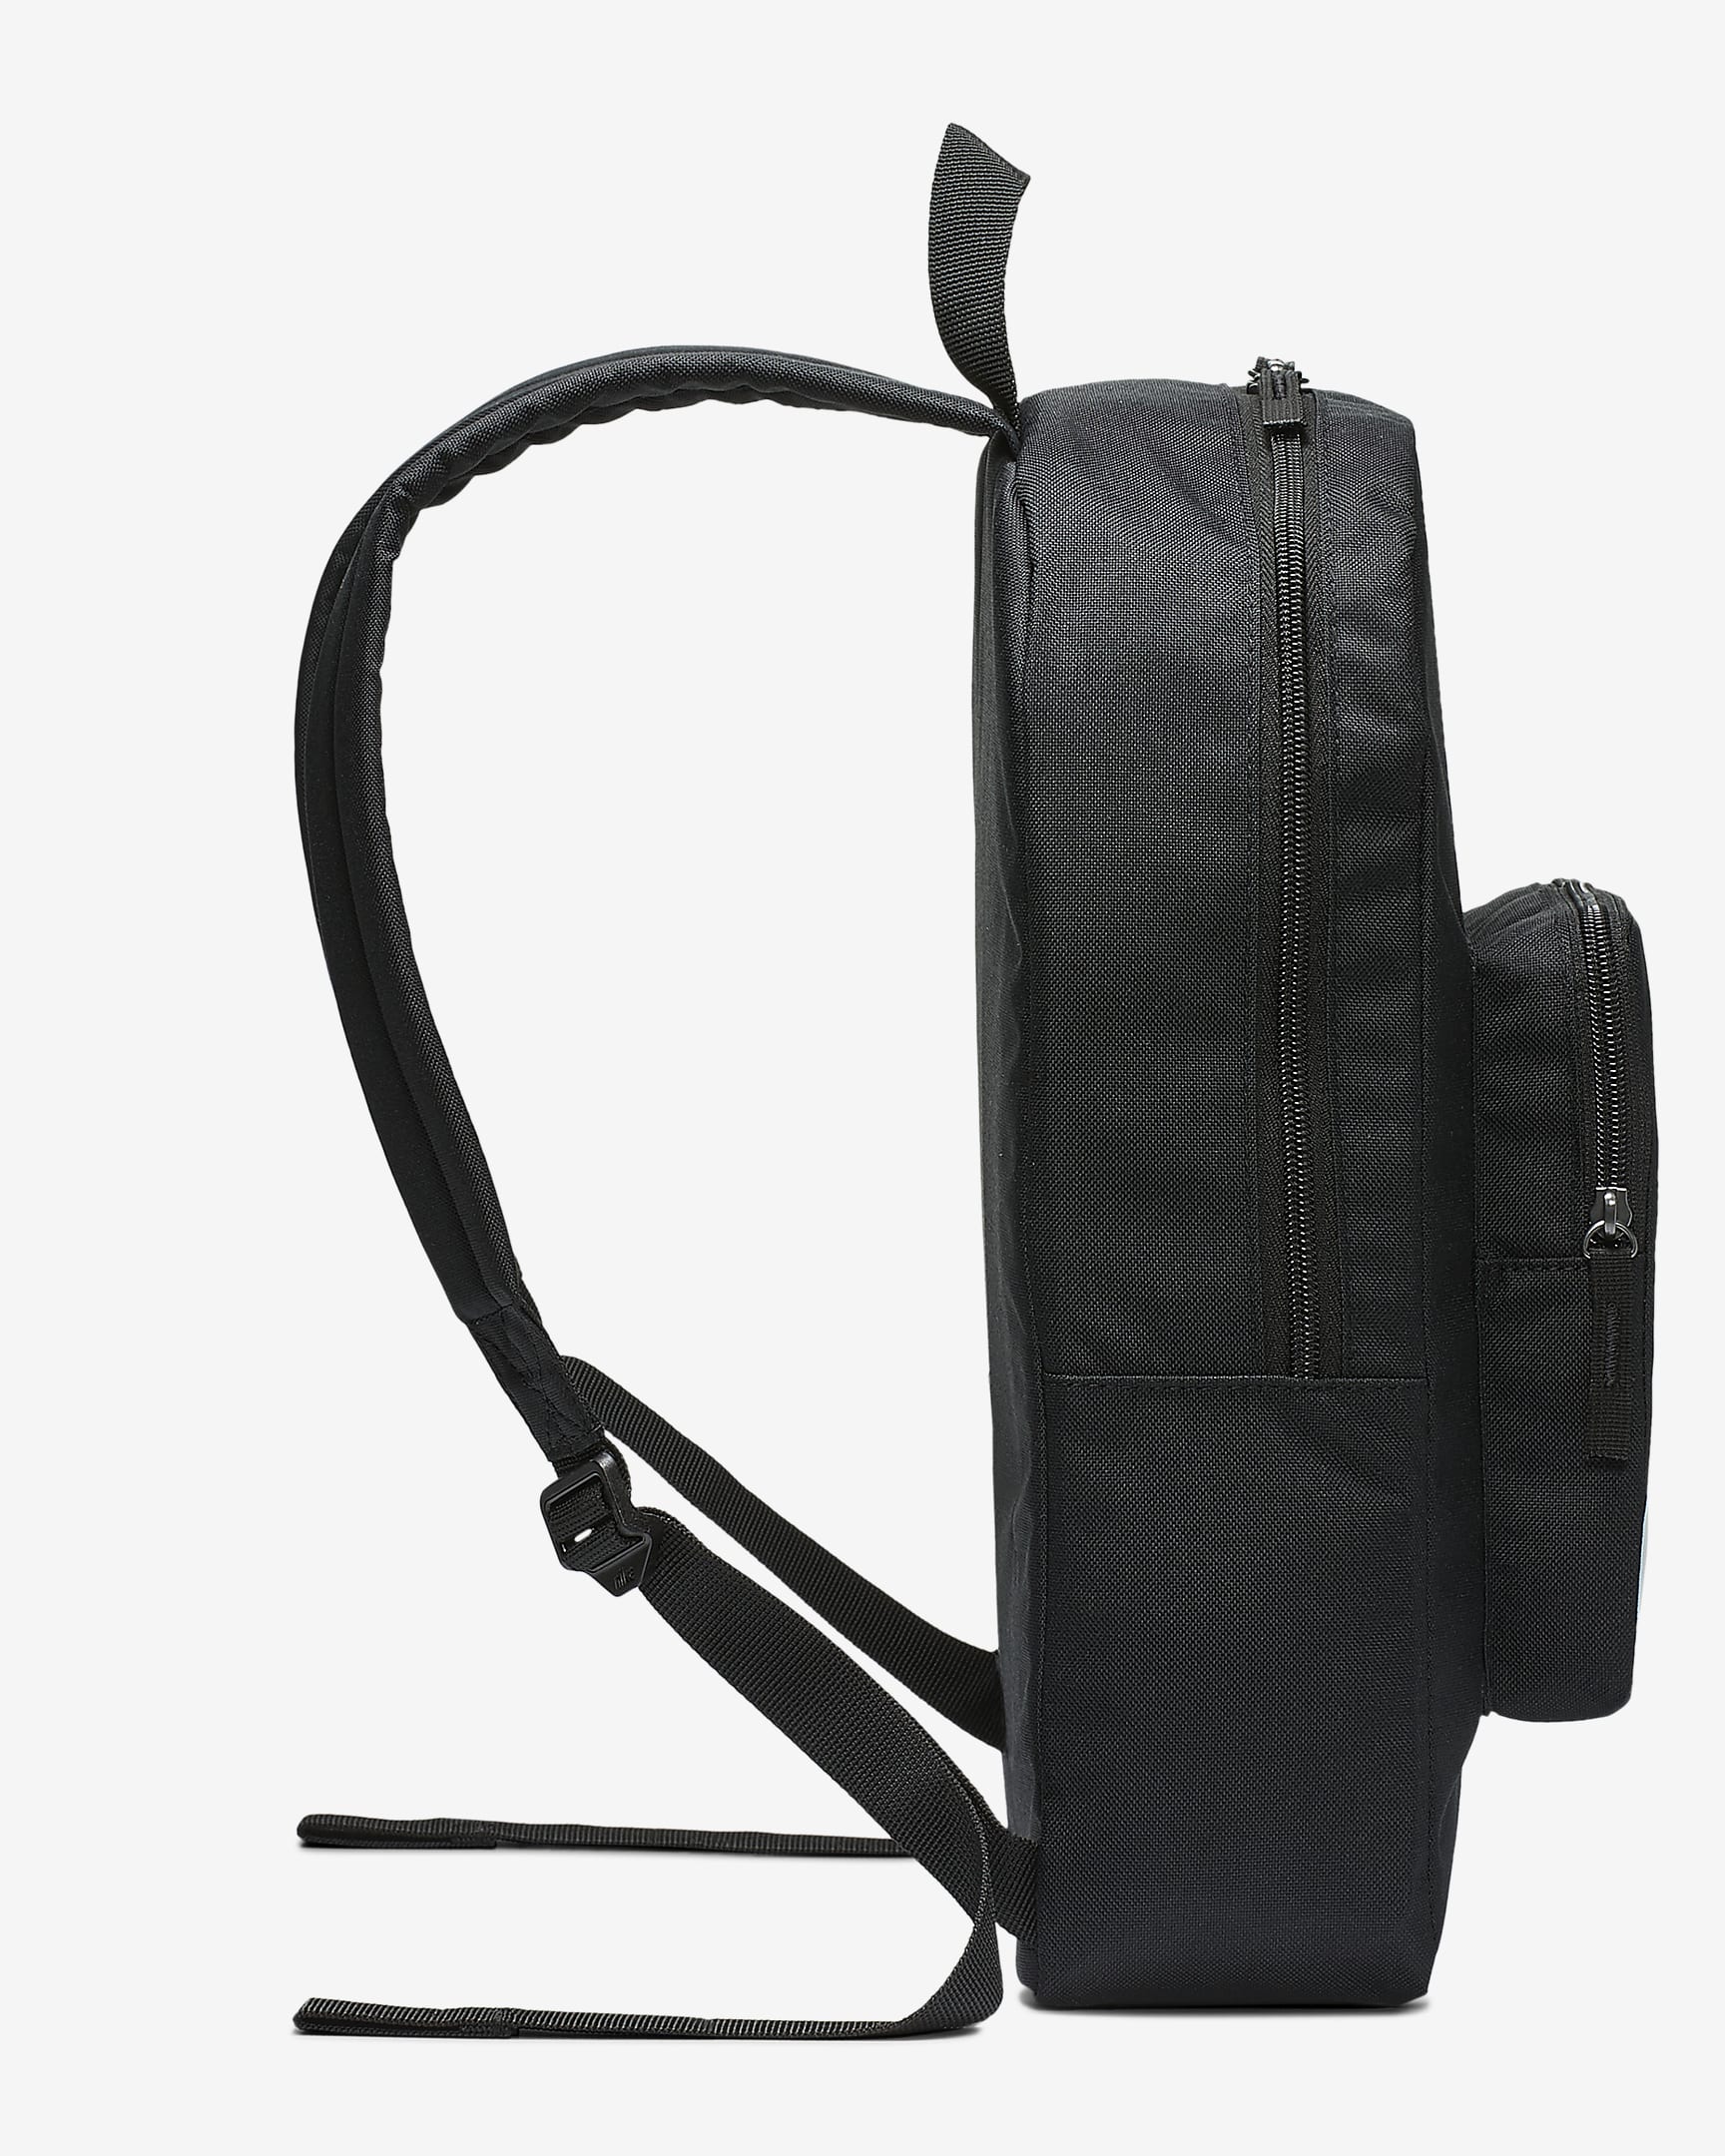 Nike Classic Kids' Backpack (16L) - Black/Black/White